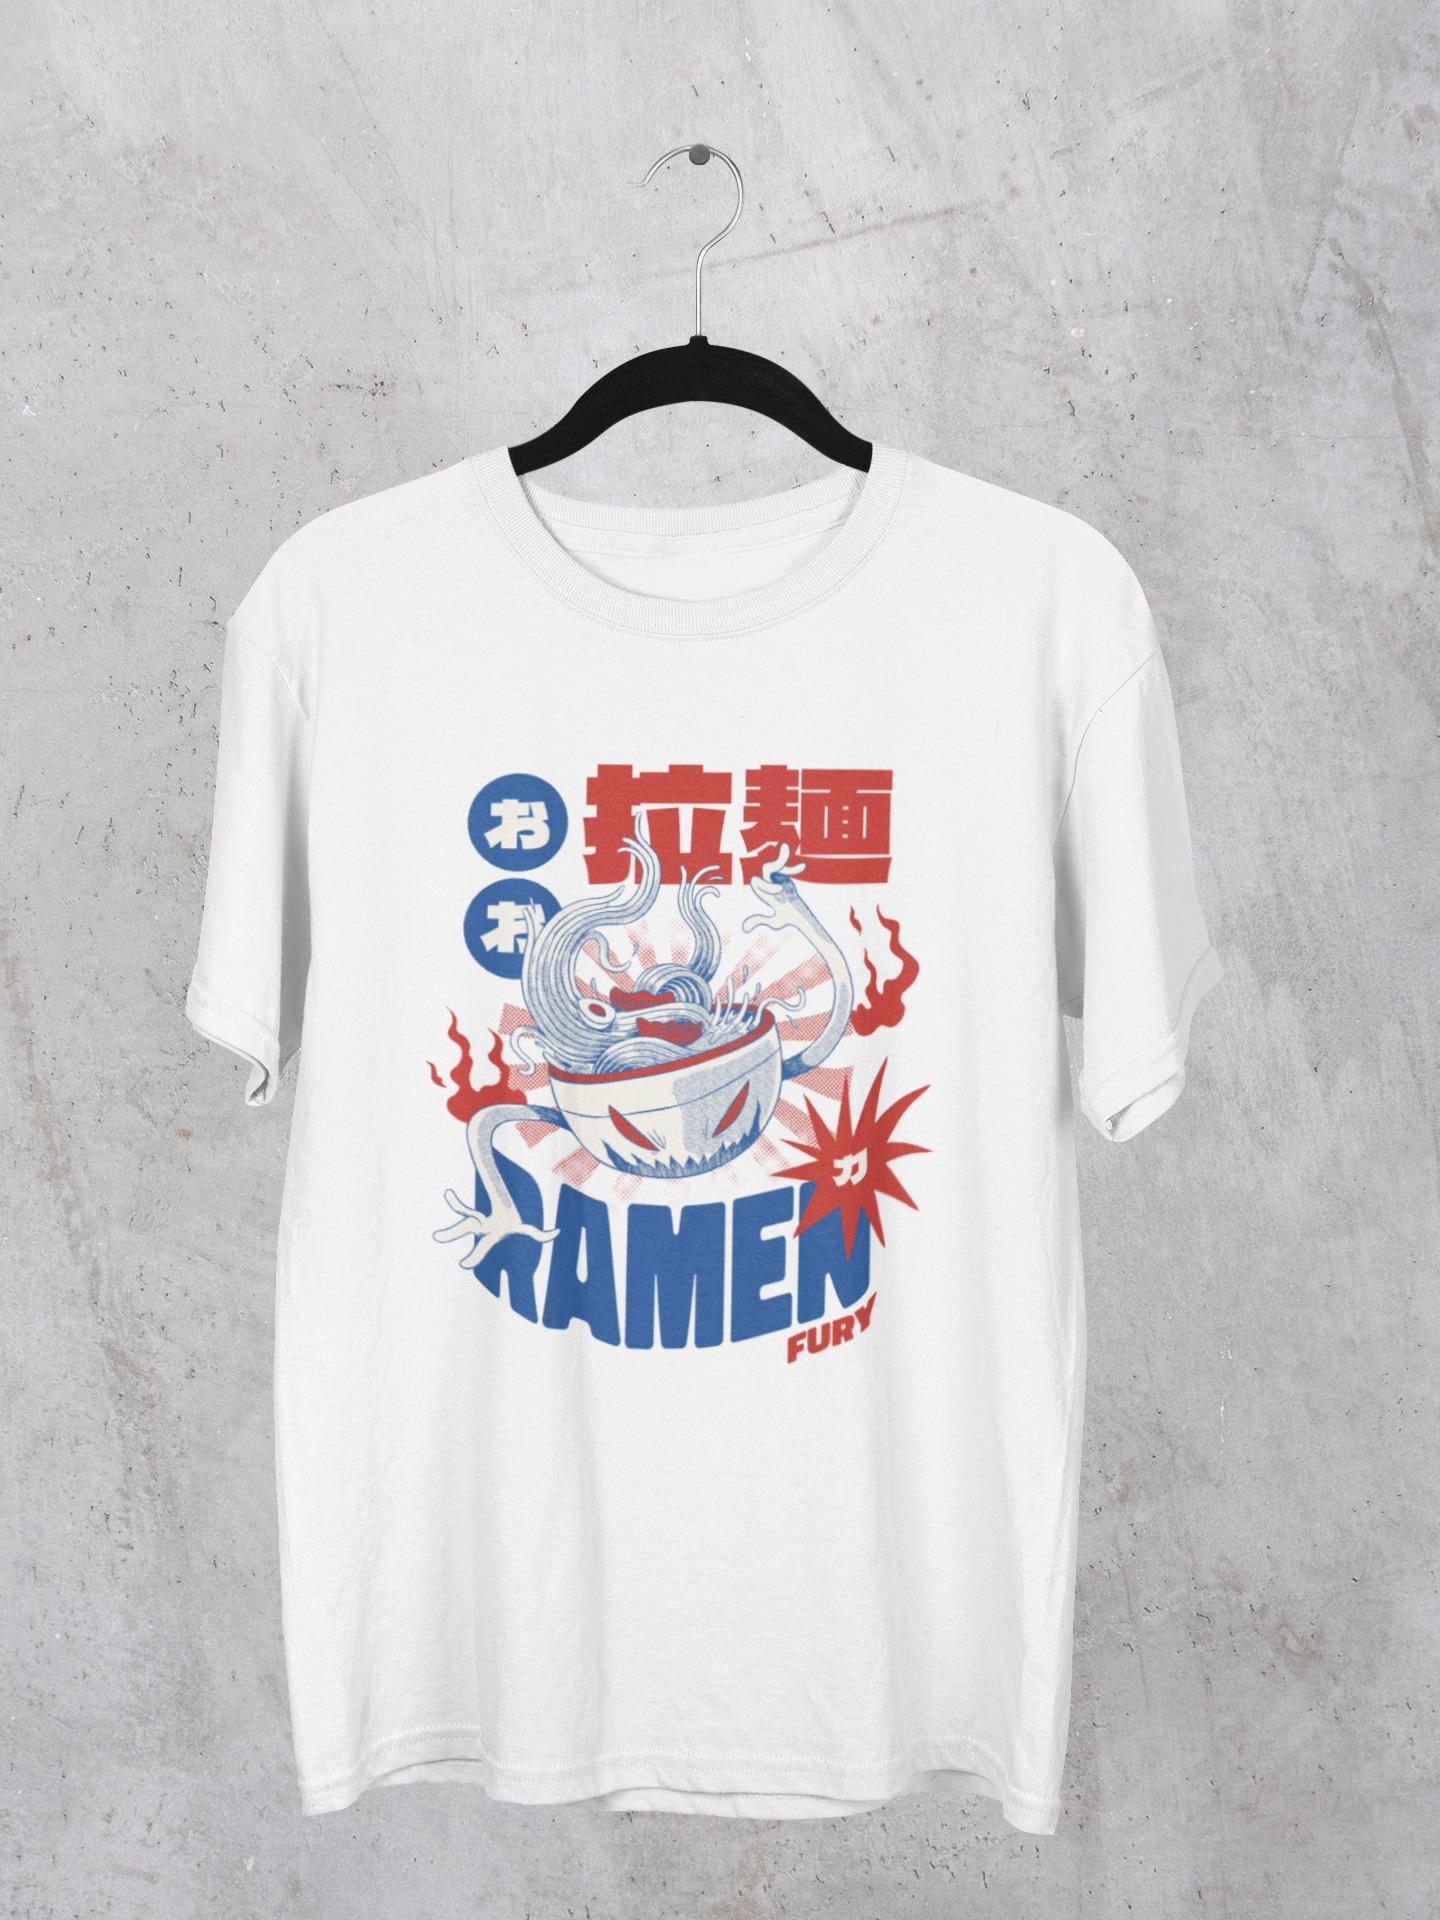 Ramen Fury T-Shirt